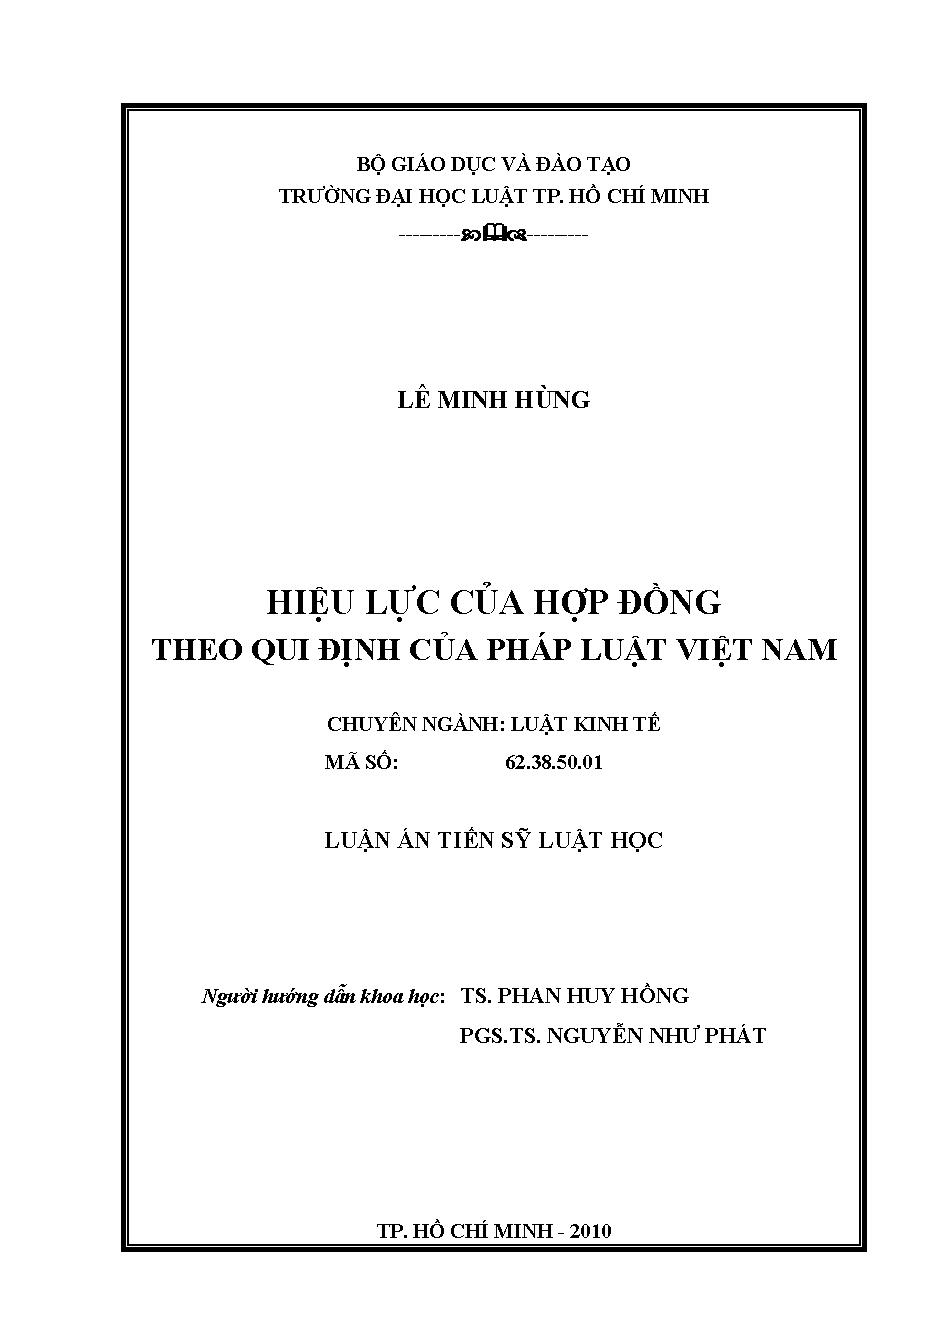 Hiệu lực của hợp đồng theo quy định của pháp luật Việt Nam